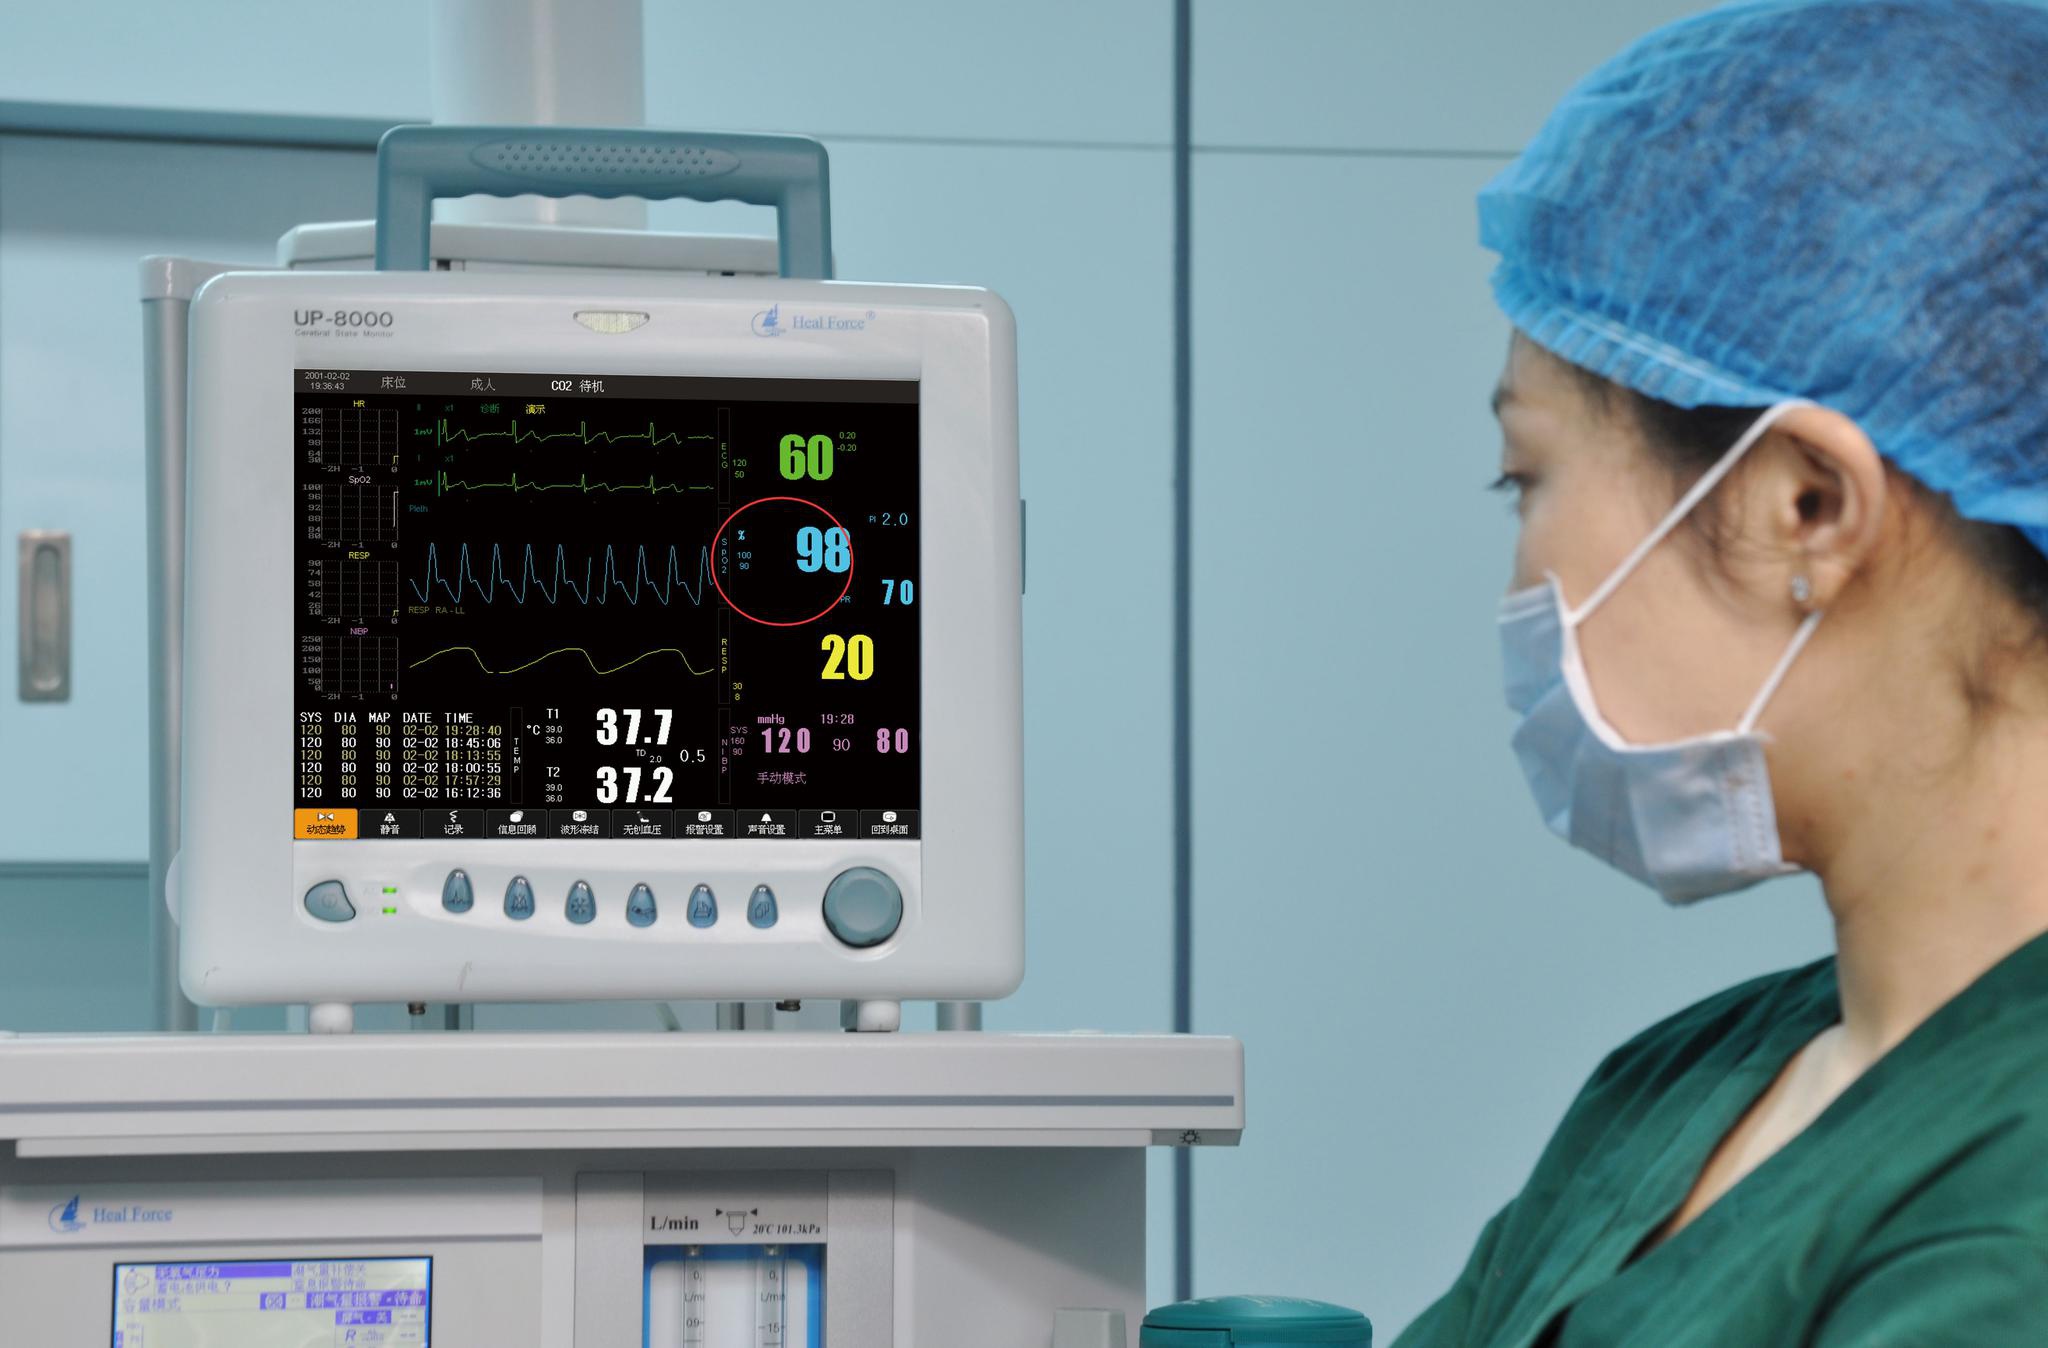 监护仪被用来监测病人的生命体征信息,能够及时反应病人瞬间的生理